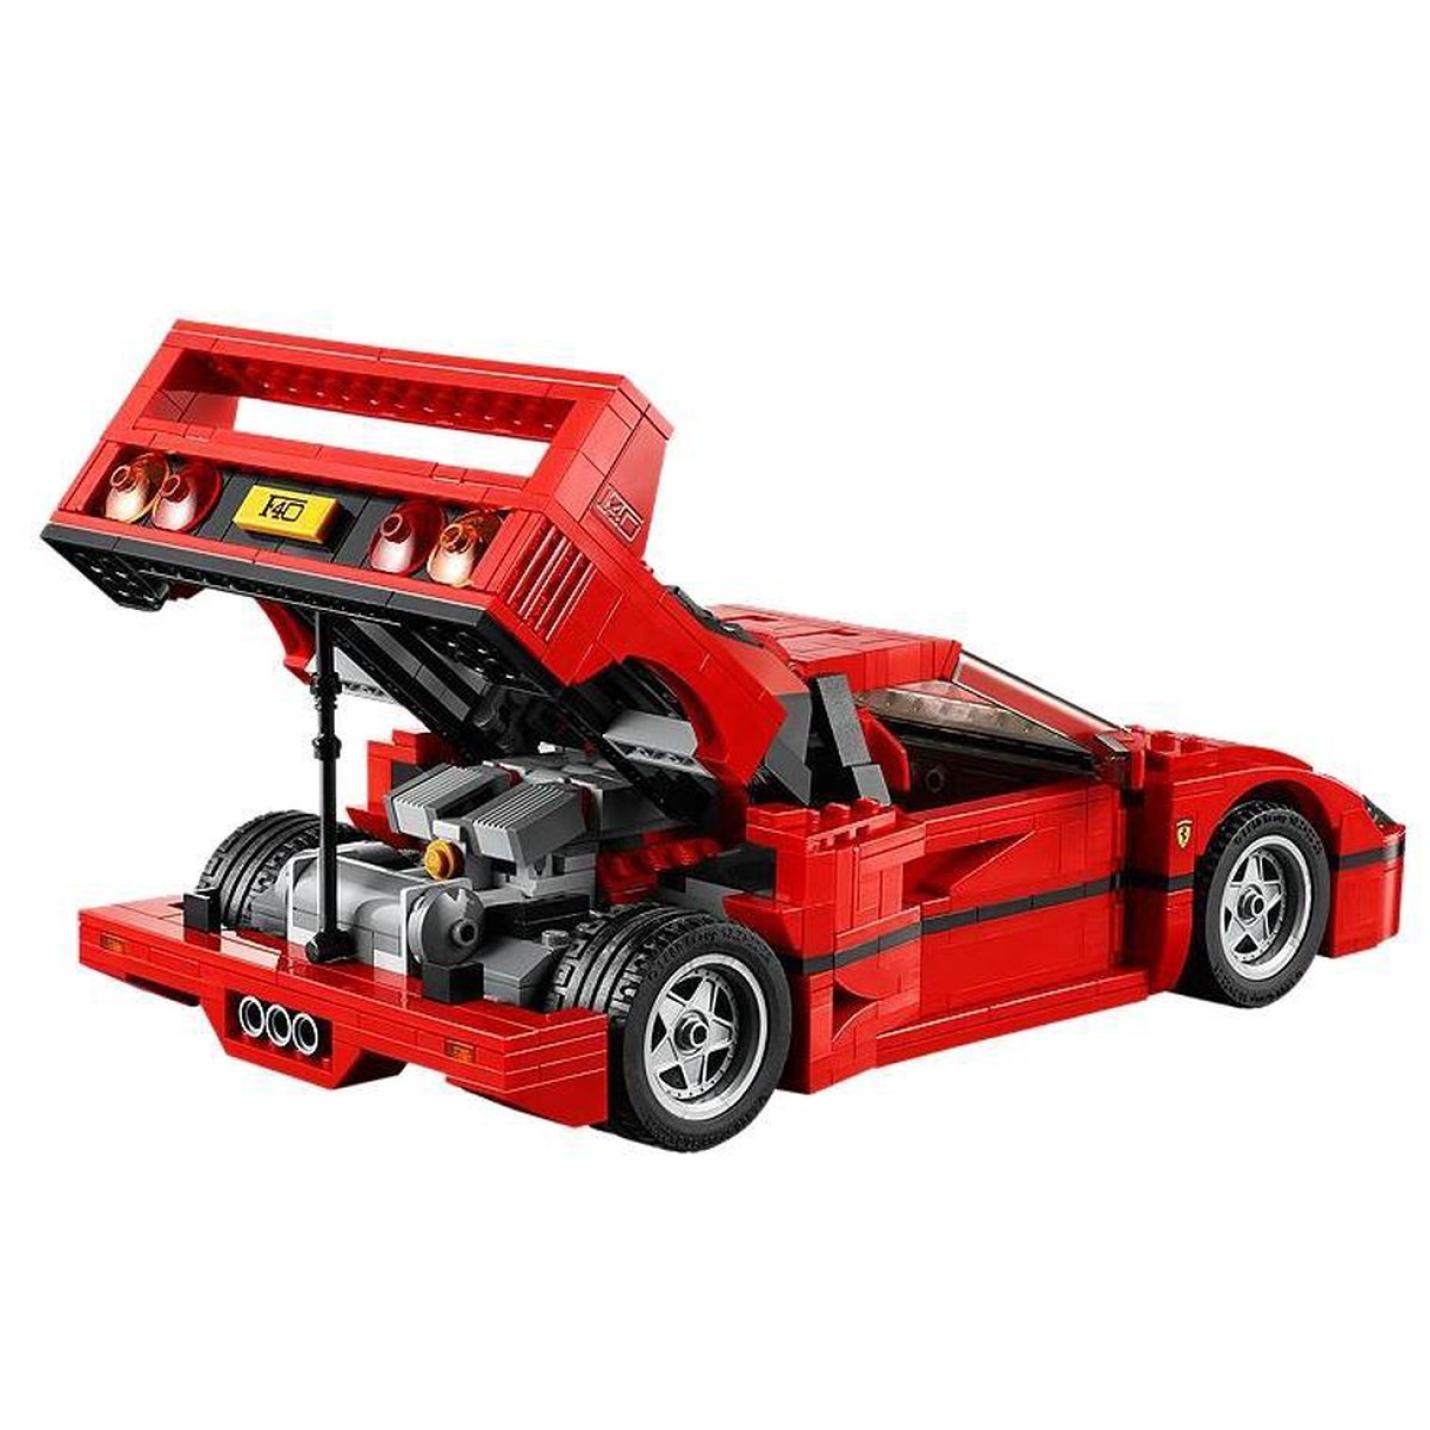 LEGO Creator Expert Ferrari F40 - 10248 6